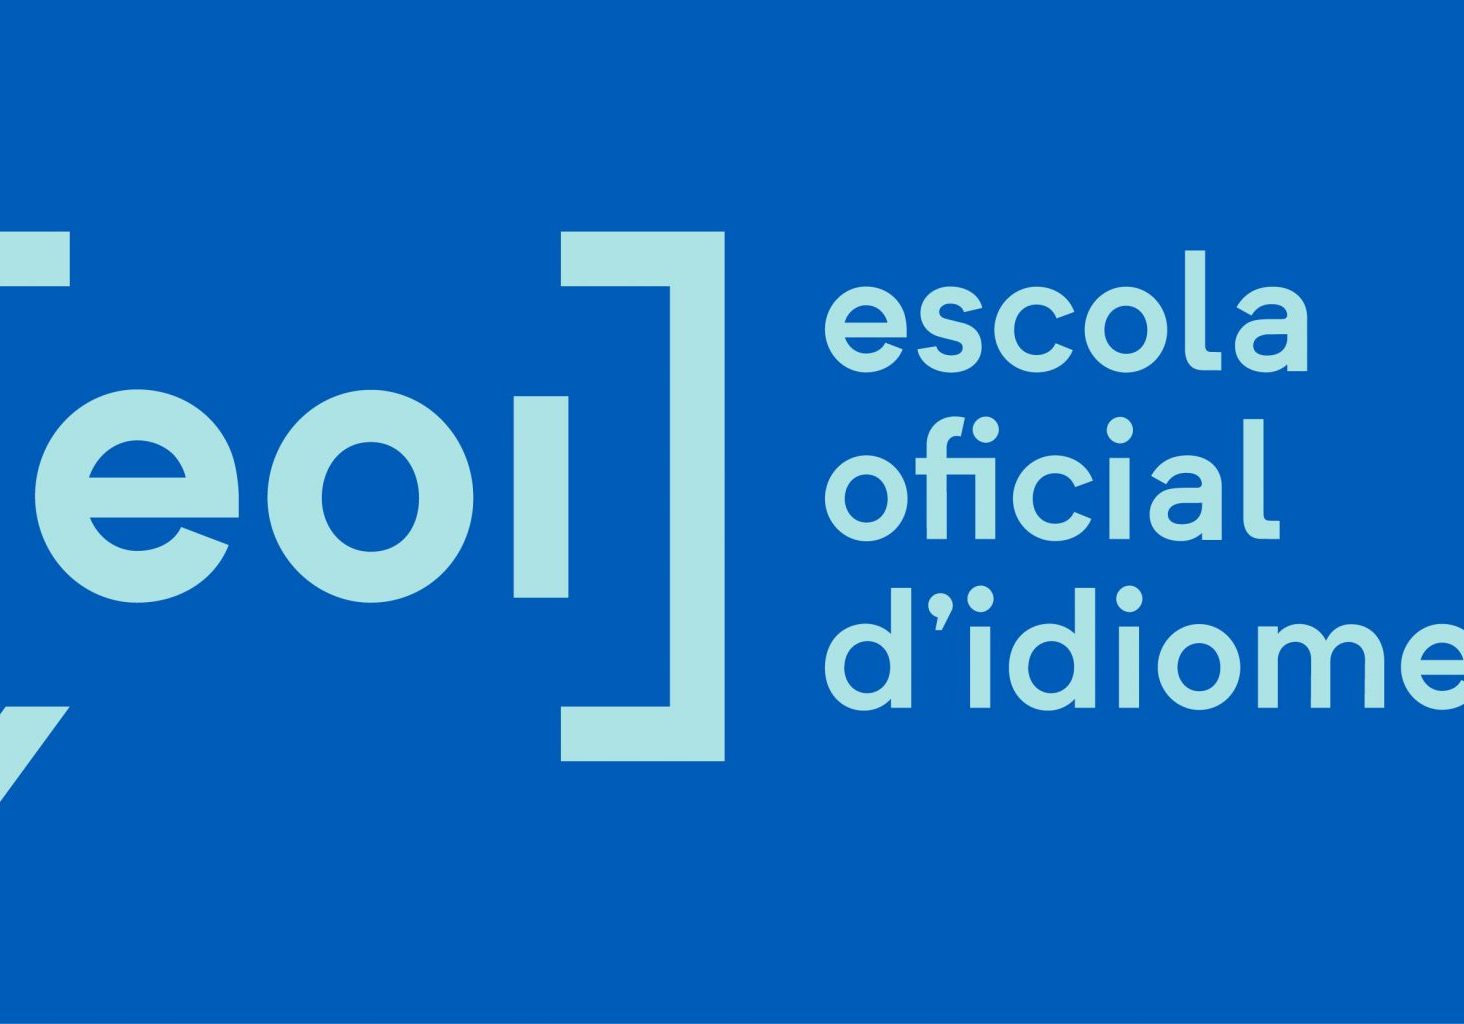 logo blau